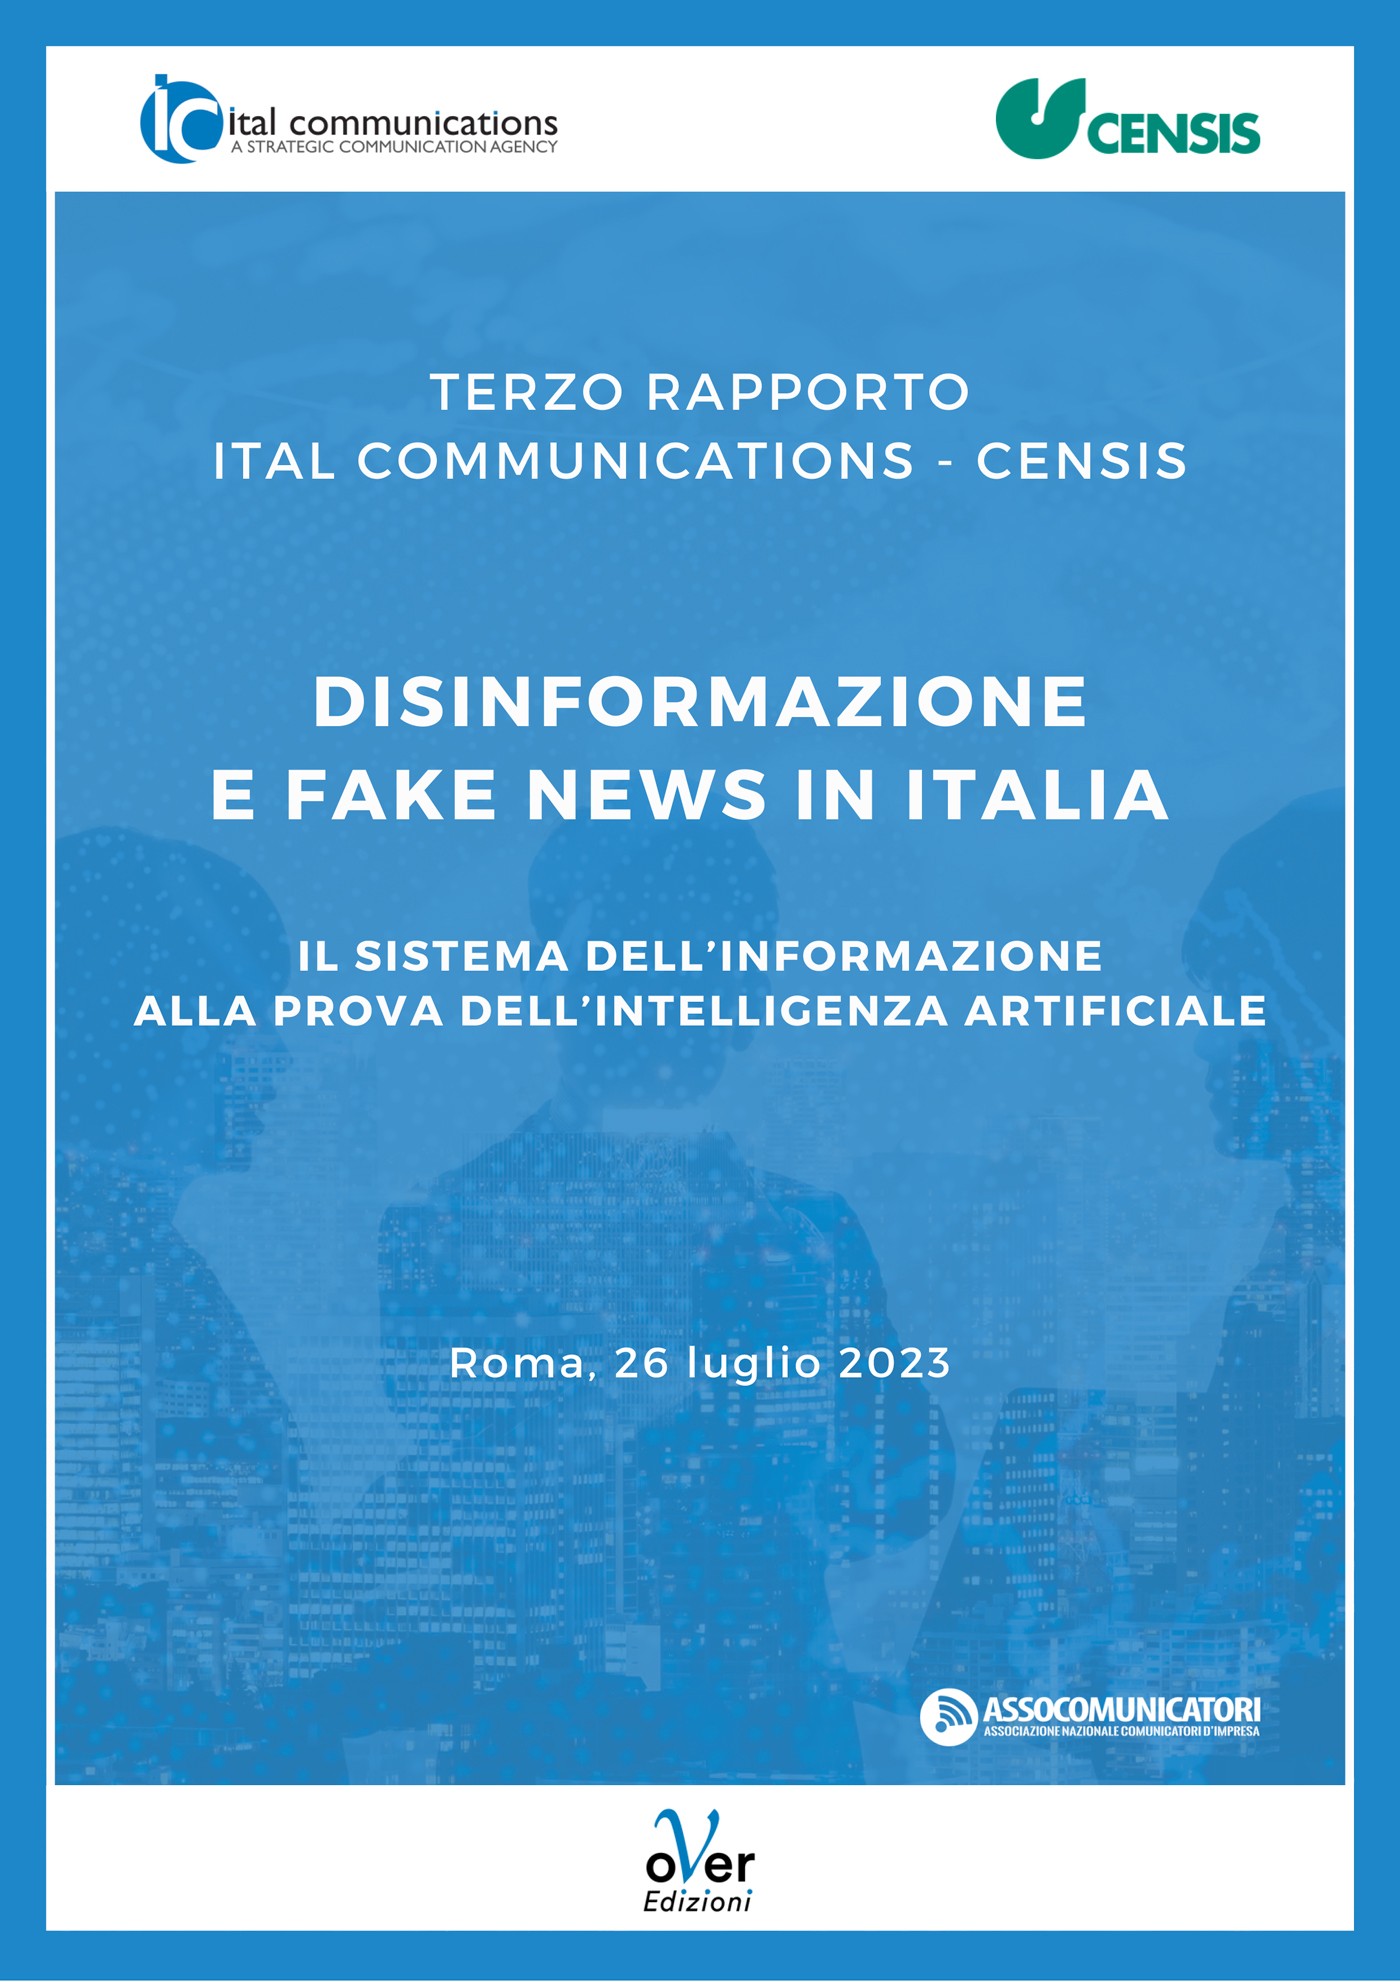 Terzo Rapporto Ital Communications - Censis “Disinformazione e fake news in Italia” - Librerie.coop